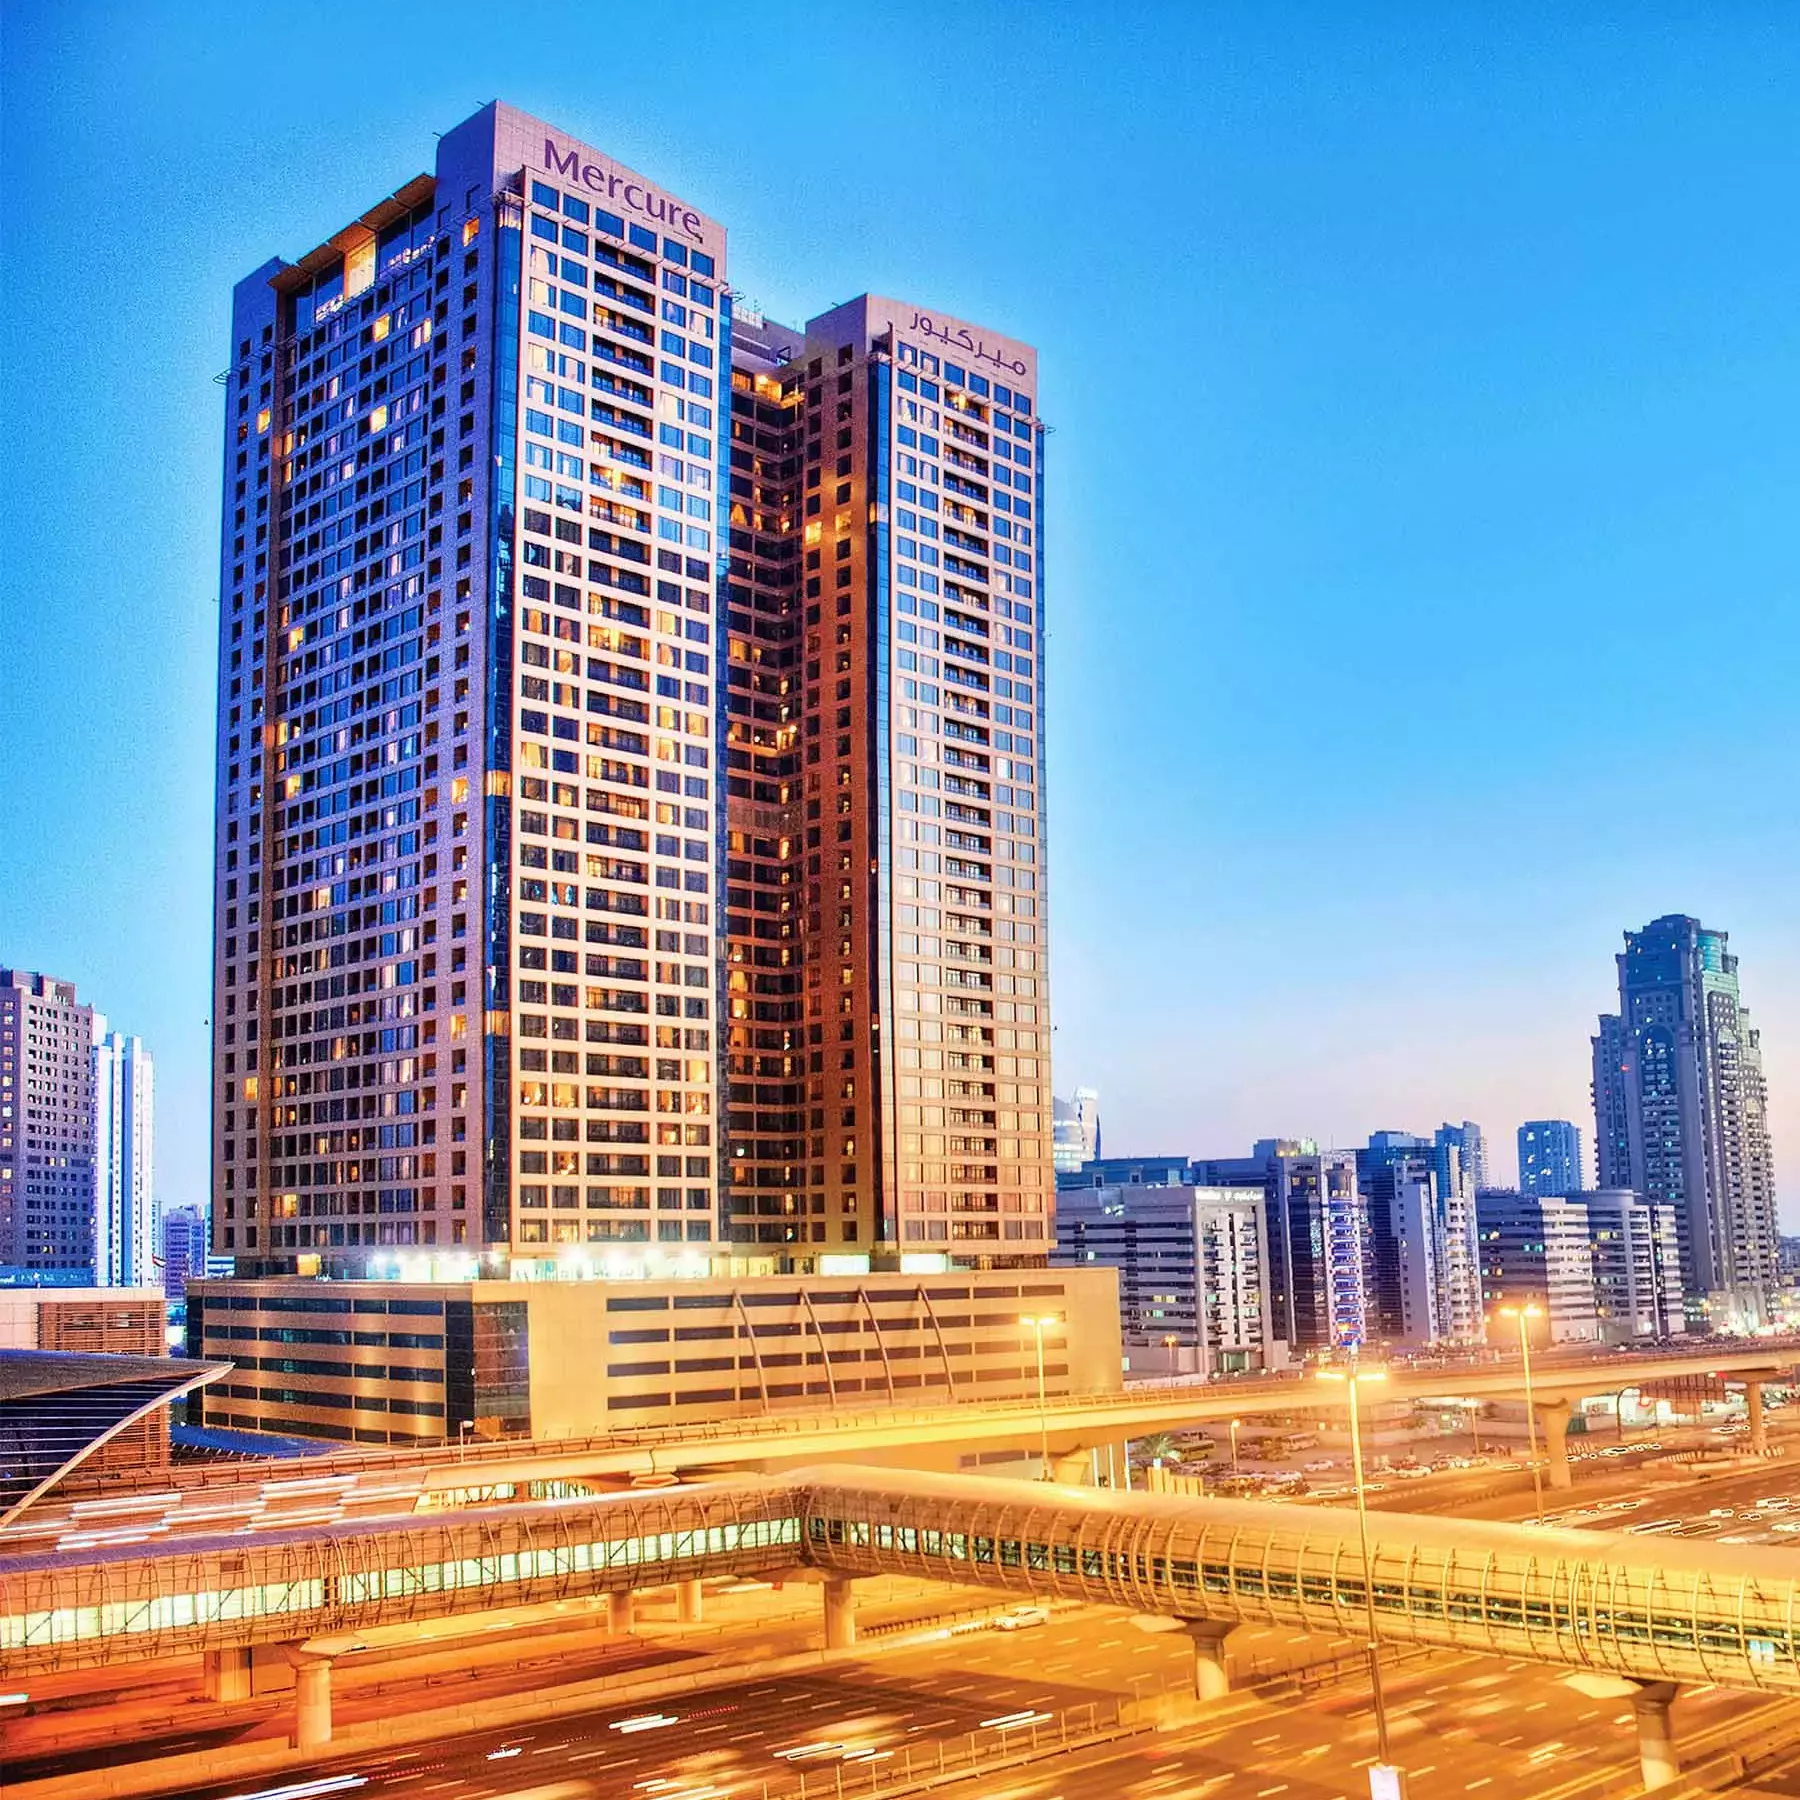 Mercure Hotel Suites & Apartments, Barsha Heights mena plaza hotel al barsha